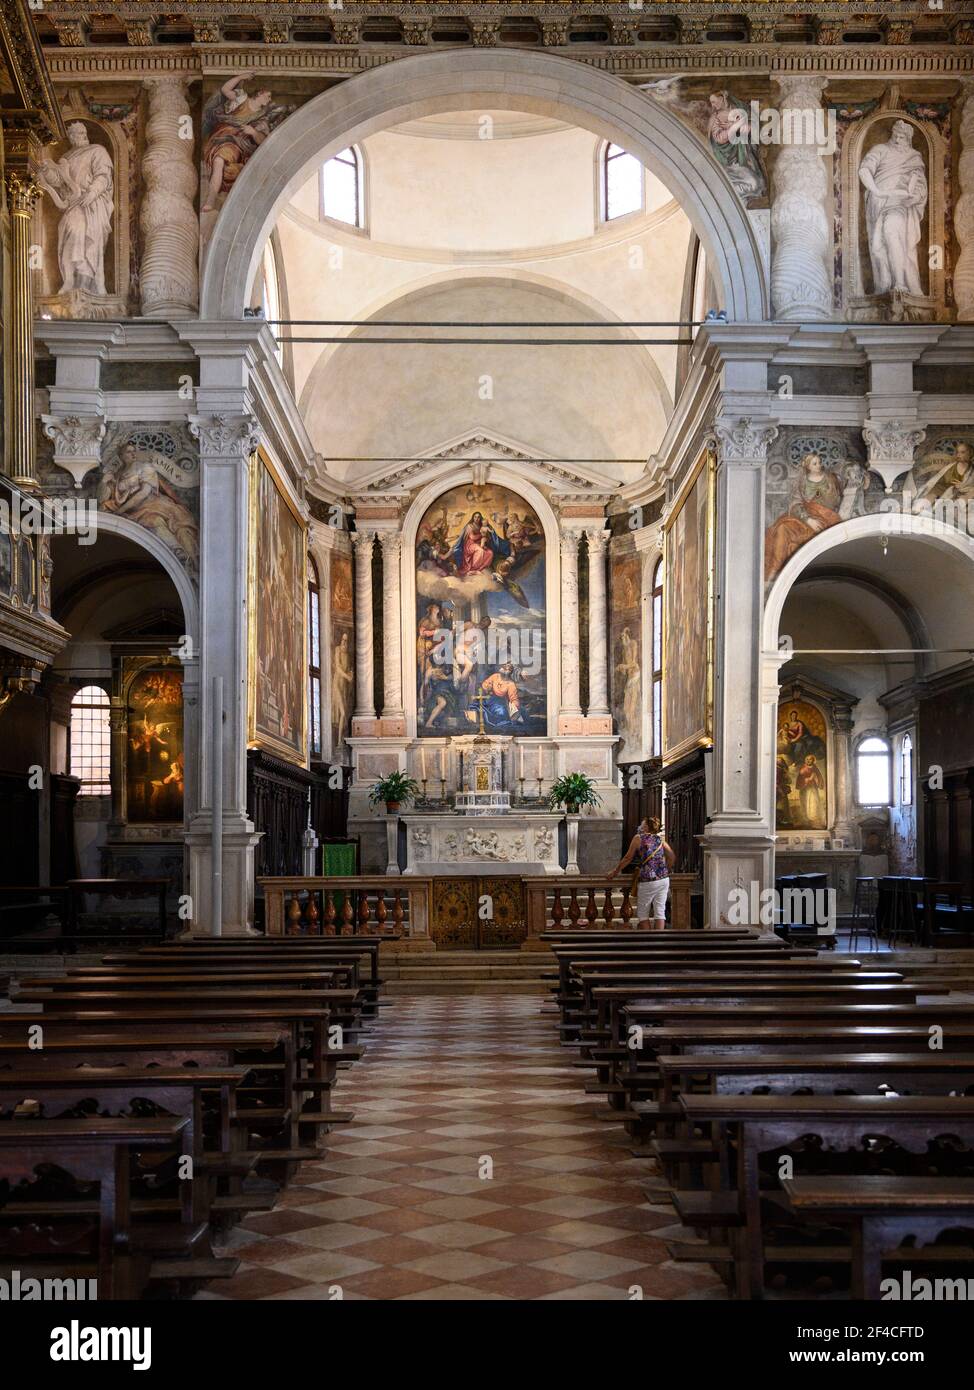 Venecia. Italia. Interior de la Chiesa di San Sebastiano (Iglesia de San Sebastián), el retablo alto, que representa a la Virgen y el Niño en el ingenio de la Gloria Foto de stock